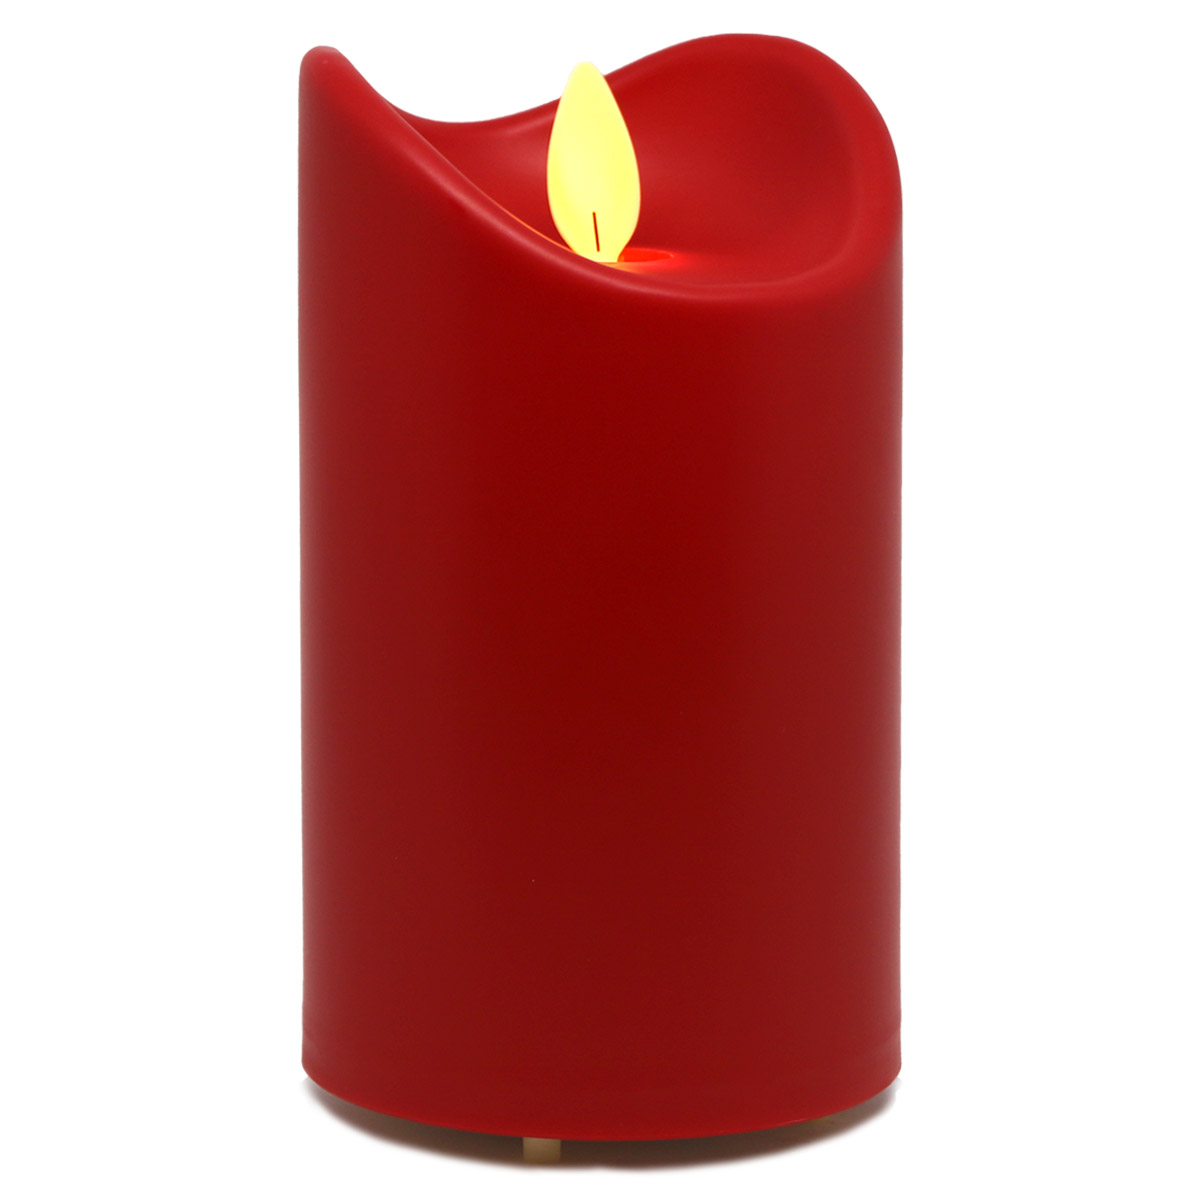 LED-Kunstharzkerze mit "Flamme", Rot, ca. 13cm, IP44 Outdoor Kerze